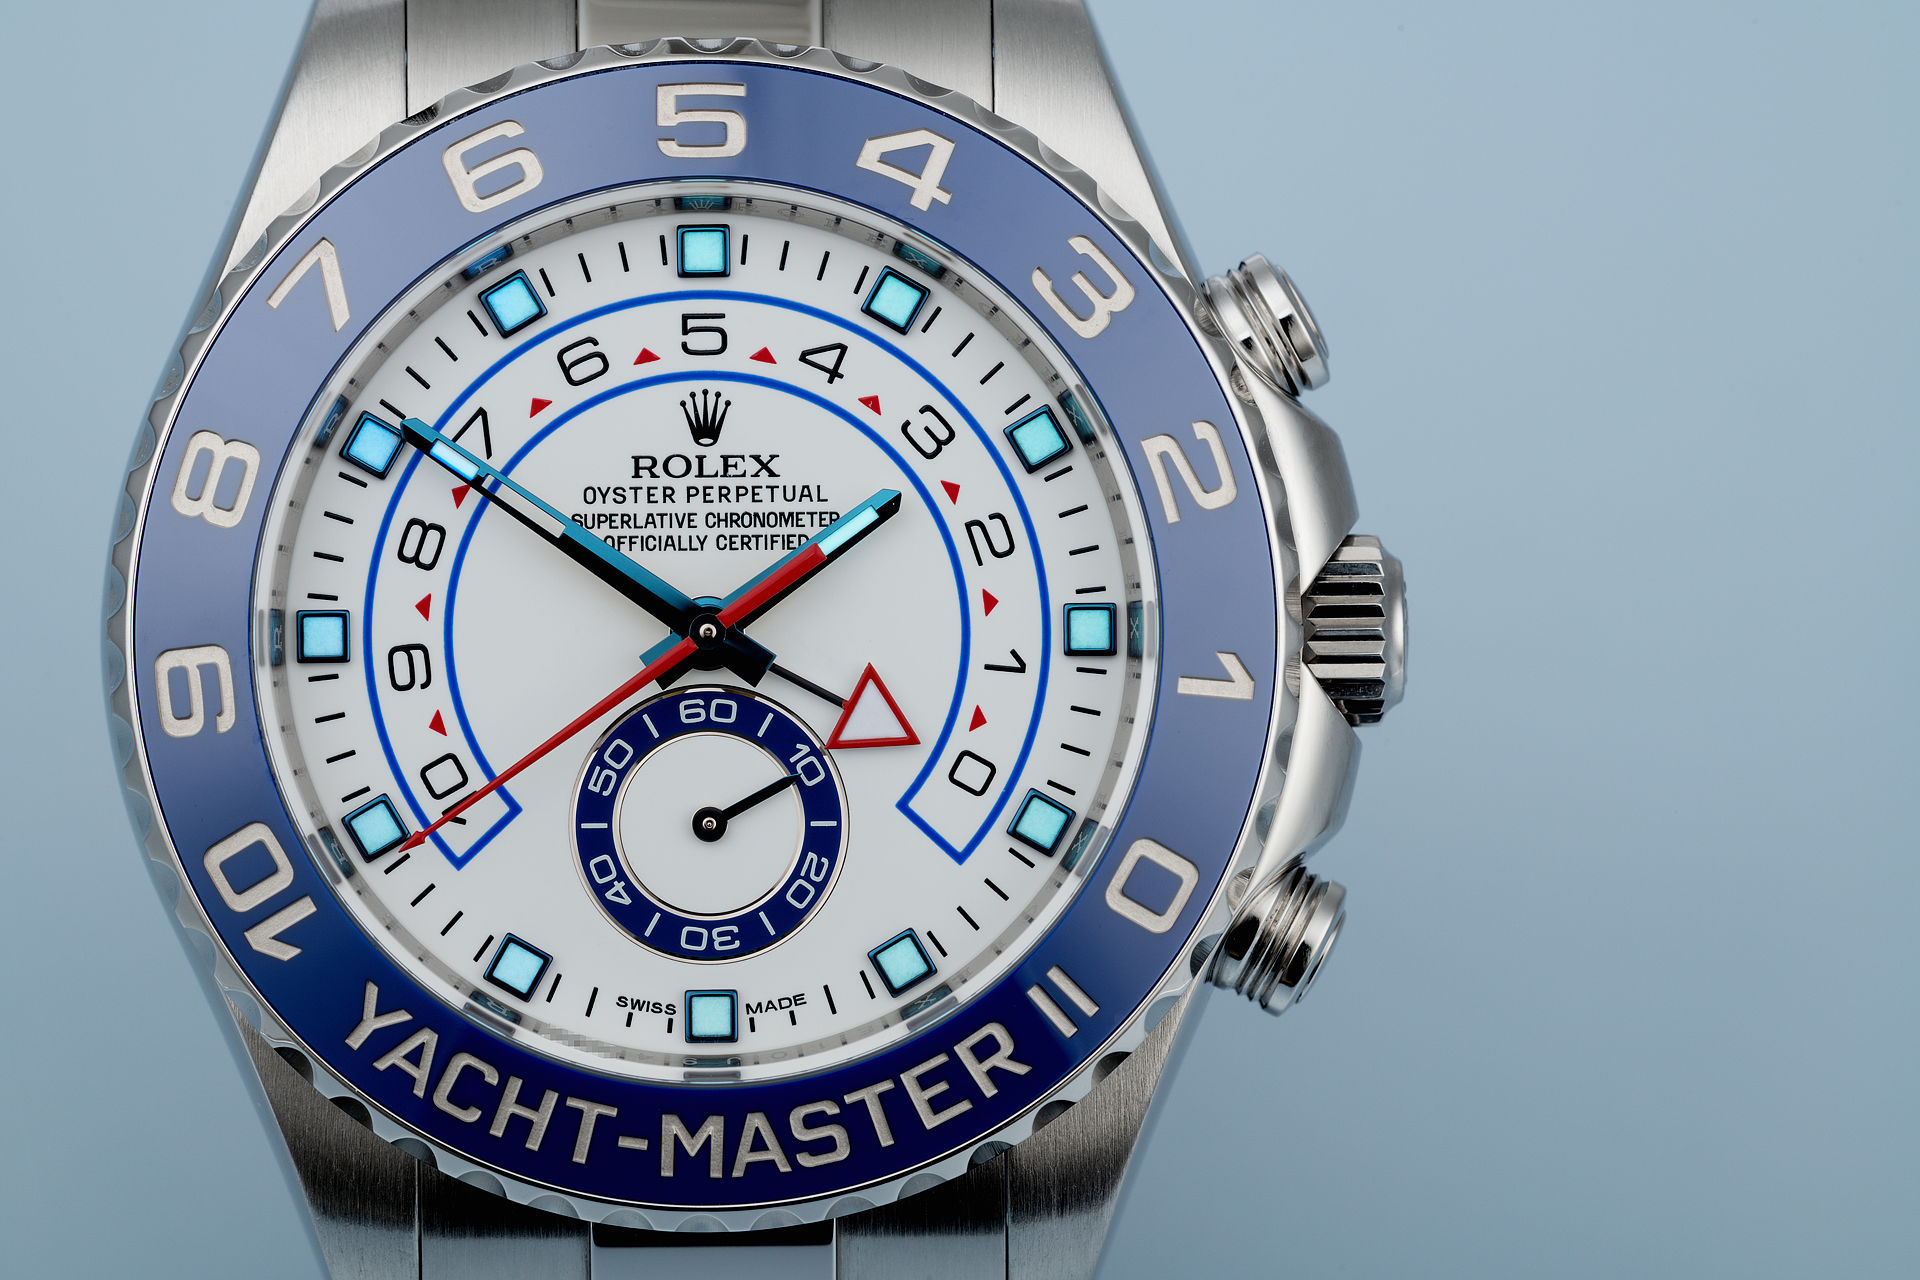 ref 116680 | Under Rolex 5 Year Warranty | Rolex Yacht-Master II